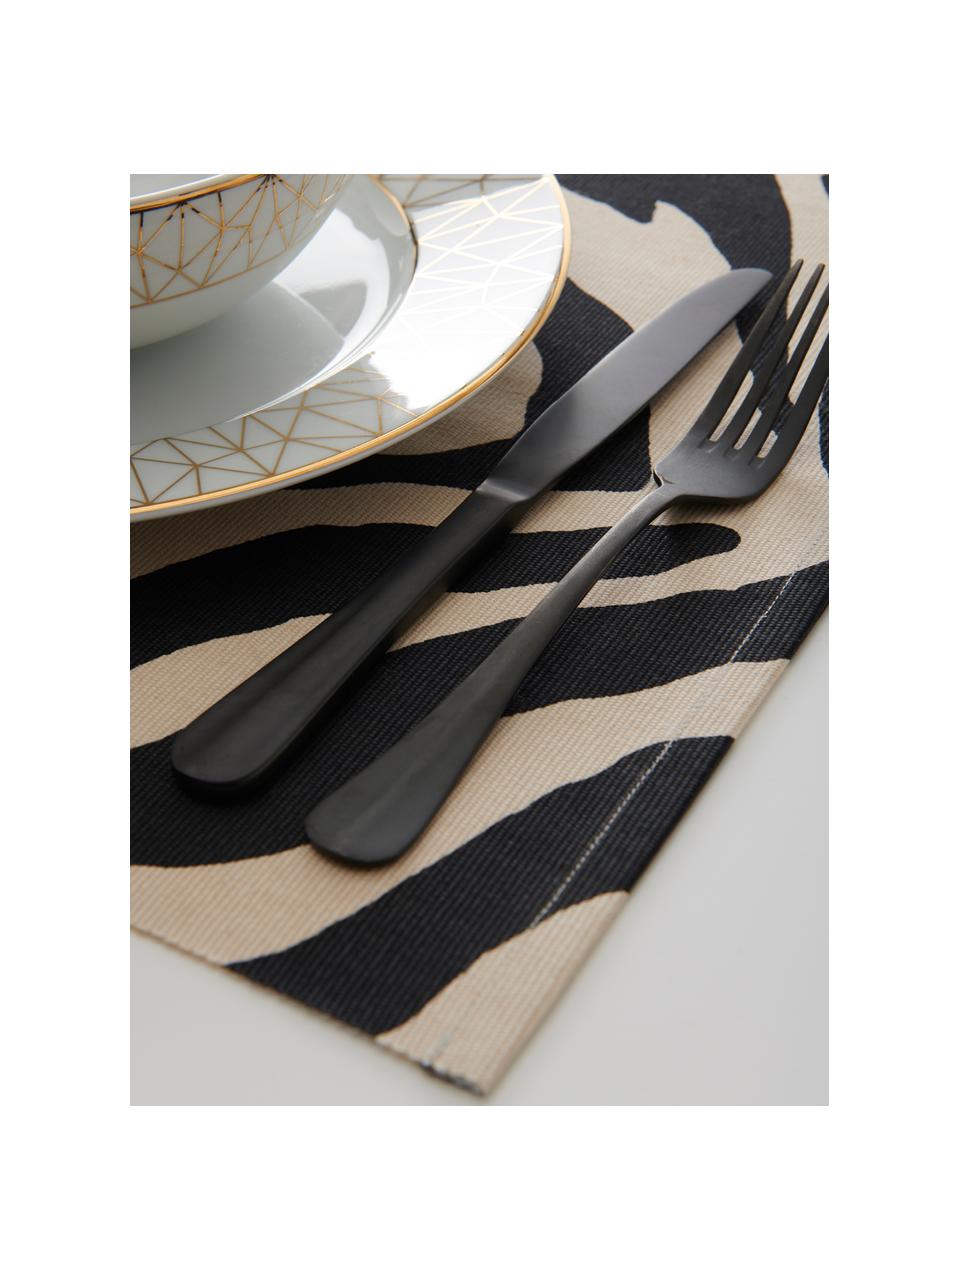 Podkładka z bawełny Jill, 2 szt., Bawełna, Czarny, odcienie kremowego, S 35 x D 45 cm